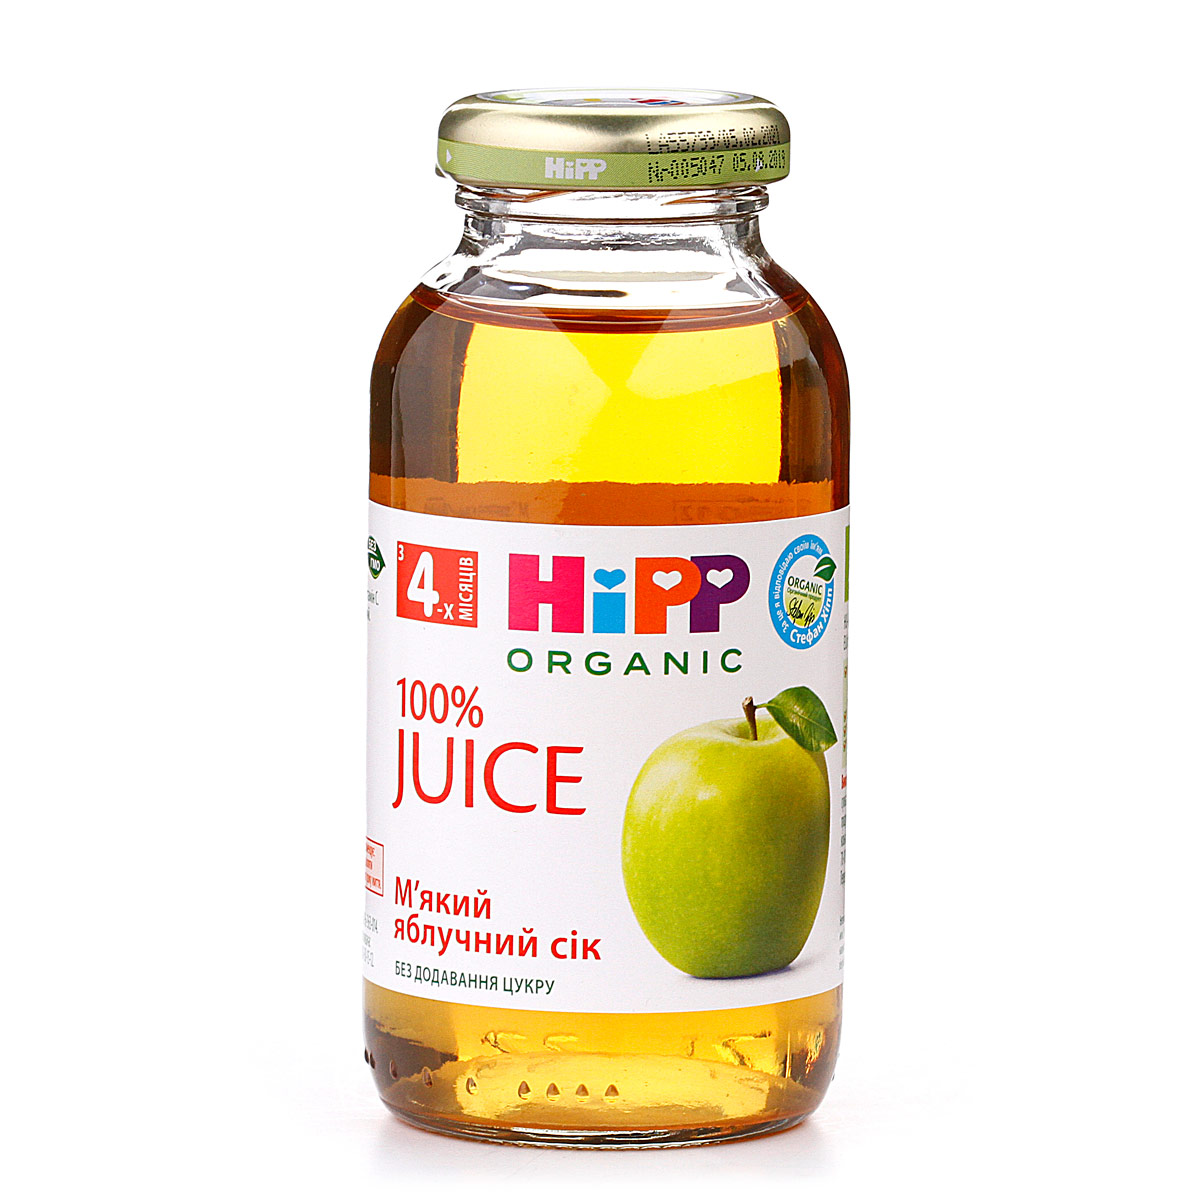 Мягкий яблочный сок - фото 8 | Интернет-магазин Shop HiPP